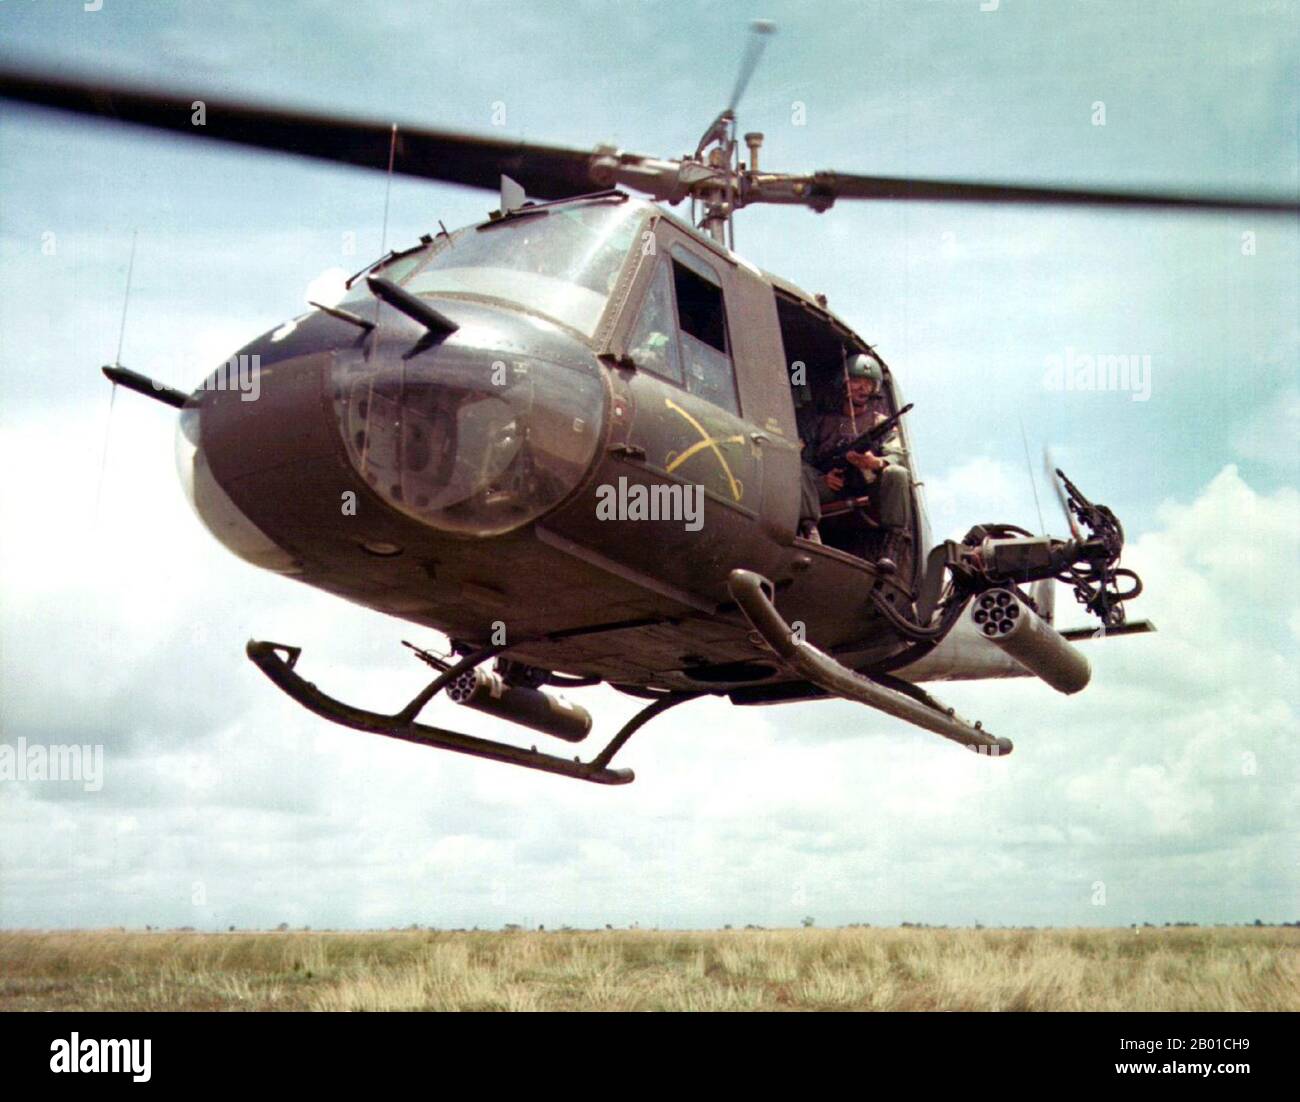 Vietnam: USA Army Sgt. Dennis Troxel sitzt als „Shotgun Rider“ an der Tür eines Hubschraubers der Bell UH-1B Huey der 179. Aviation Company, Vietnam, 1965. Der zweite Indochina-Krieg, in Amerika als Vietnamkrieg bekannt, war ein militärischer Konflikt aus der Zeit des Kalten Krieges, der sich in Vietnam, Laos und Kambodscha vom 1. November 1955 bis zum Fall Saigons am 30. April 1975 ereignete. Dieser Krieg folgte dem ersten Indochina-Krieg und wurde zwischen Nordvietnam, unterstützt von seinen kommunistischen Verbündeten, und der Regierung von Südvietnam, unterstützt von den USA und anderen antikommunistischen Nationen, geführt. Stockfoto